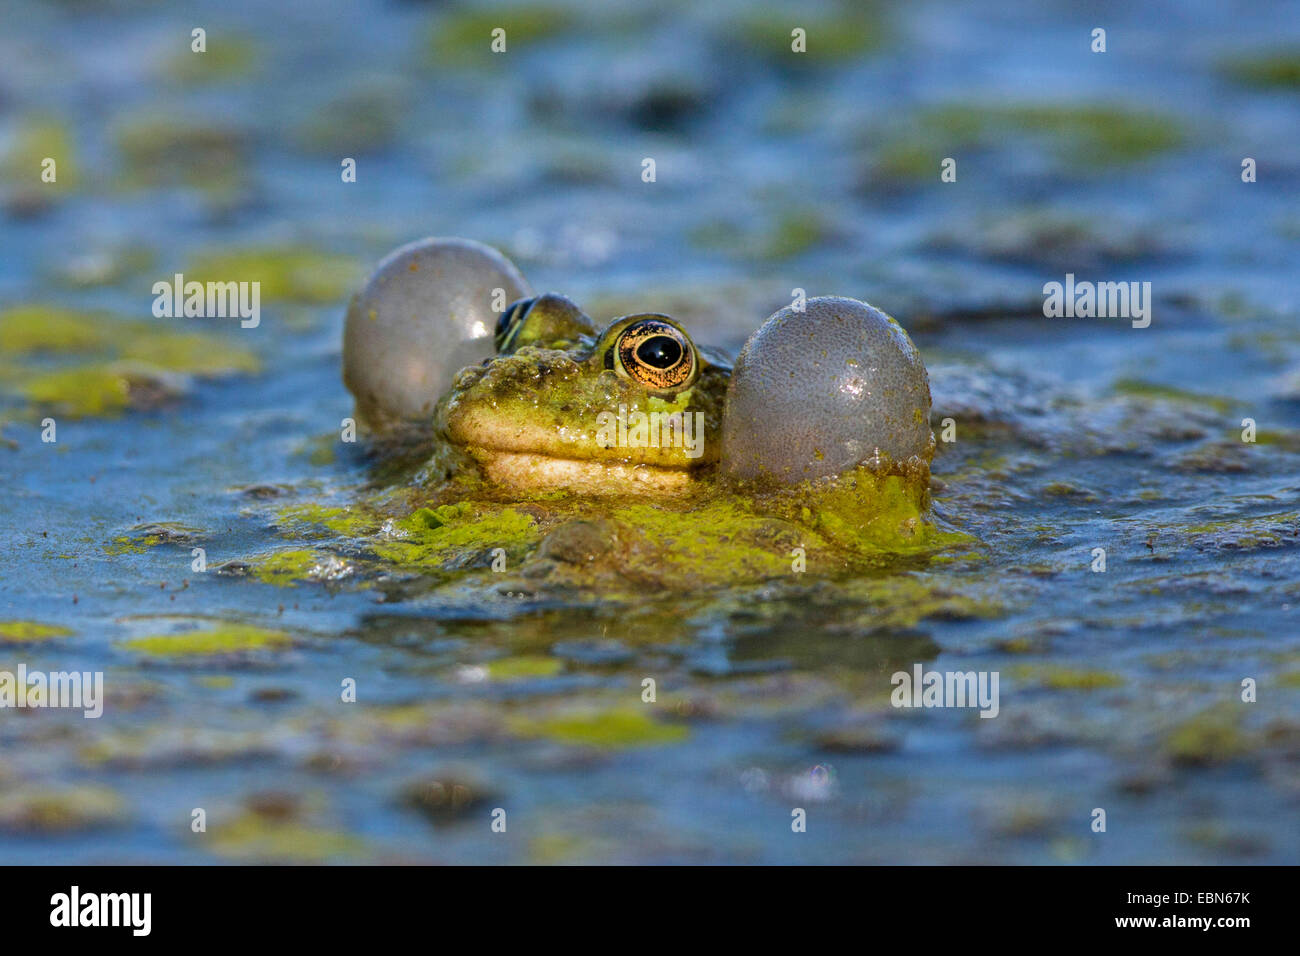 marsh frog, lake frog (Rana ridibunda, Pelophylax ridibundus), with large vocal sacks, calling, Germany, Bavaria Stock Photo